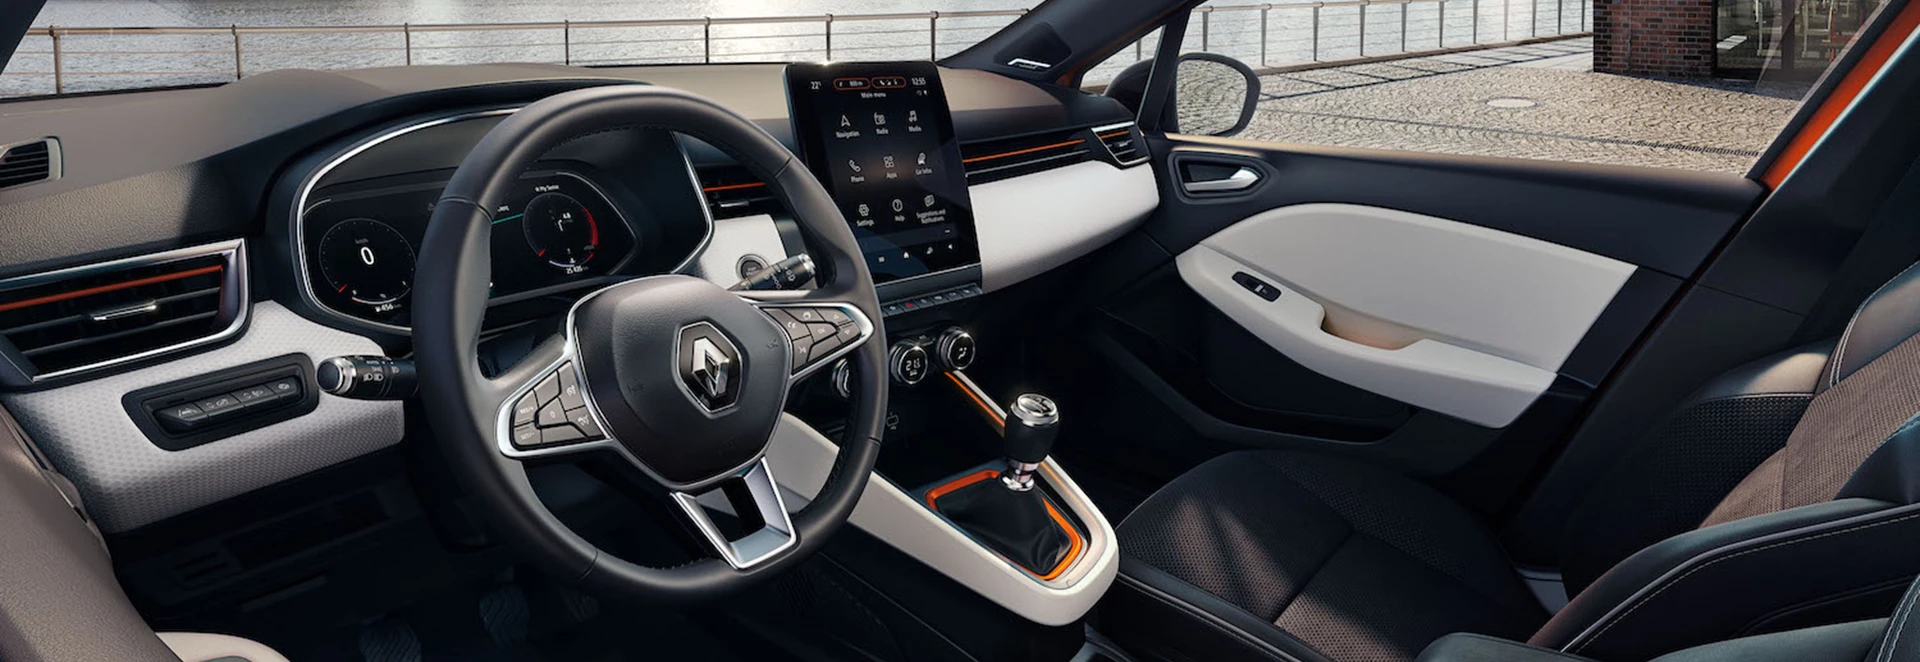 Upcoming Renault Clio V interior revealed 